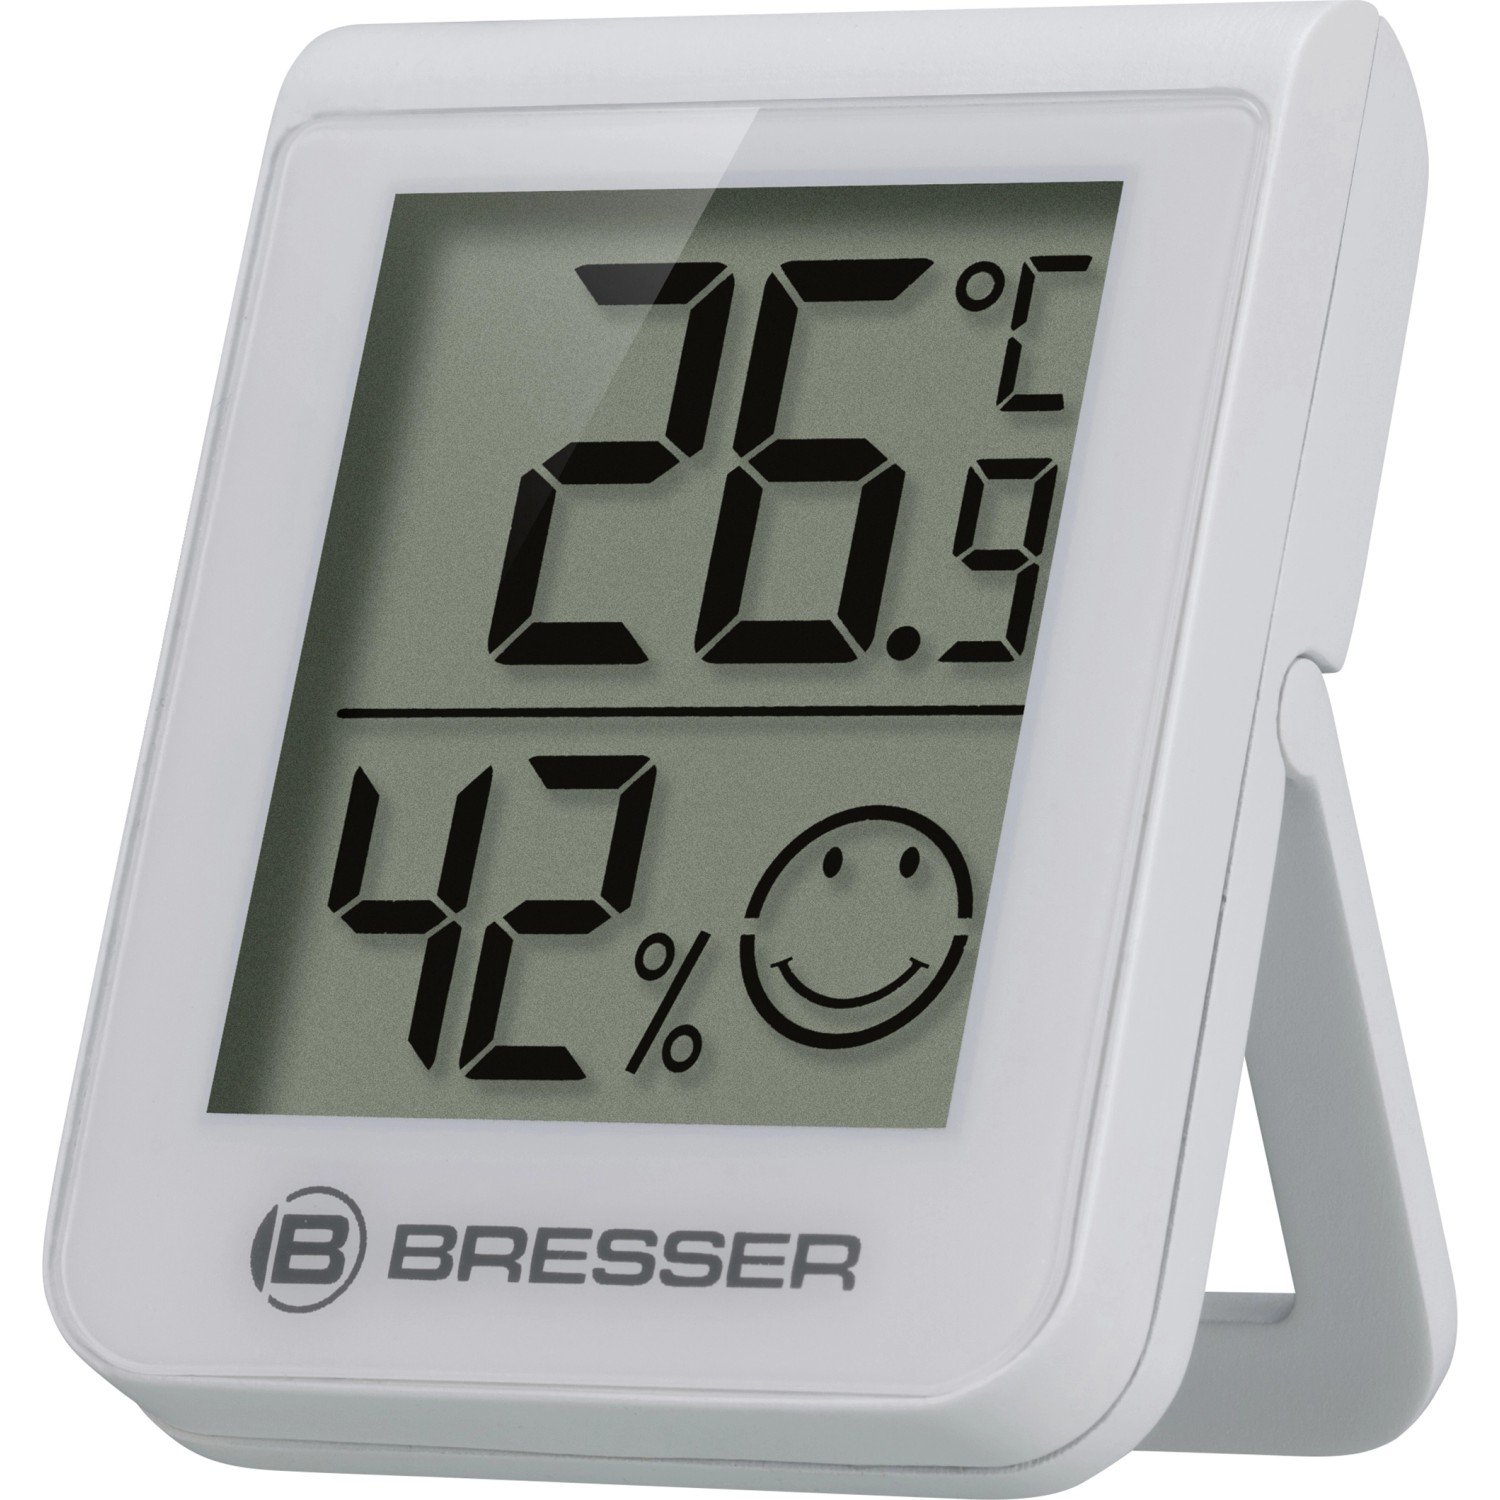 Thermometer online kaufen bei OBI